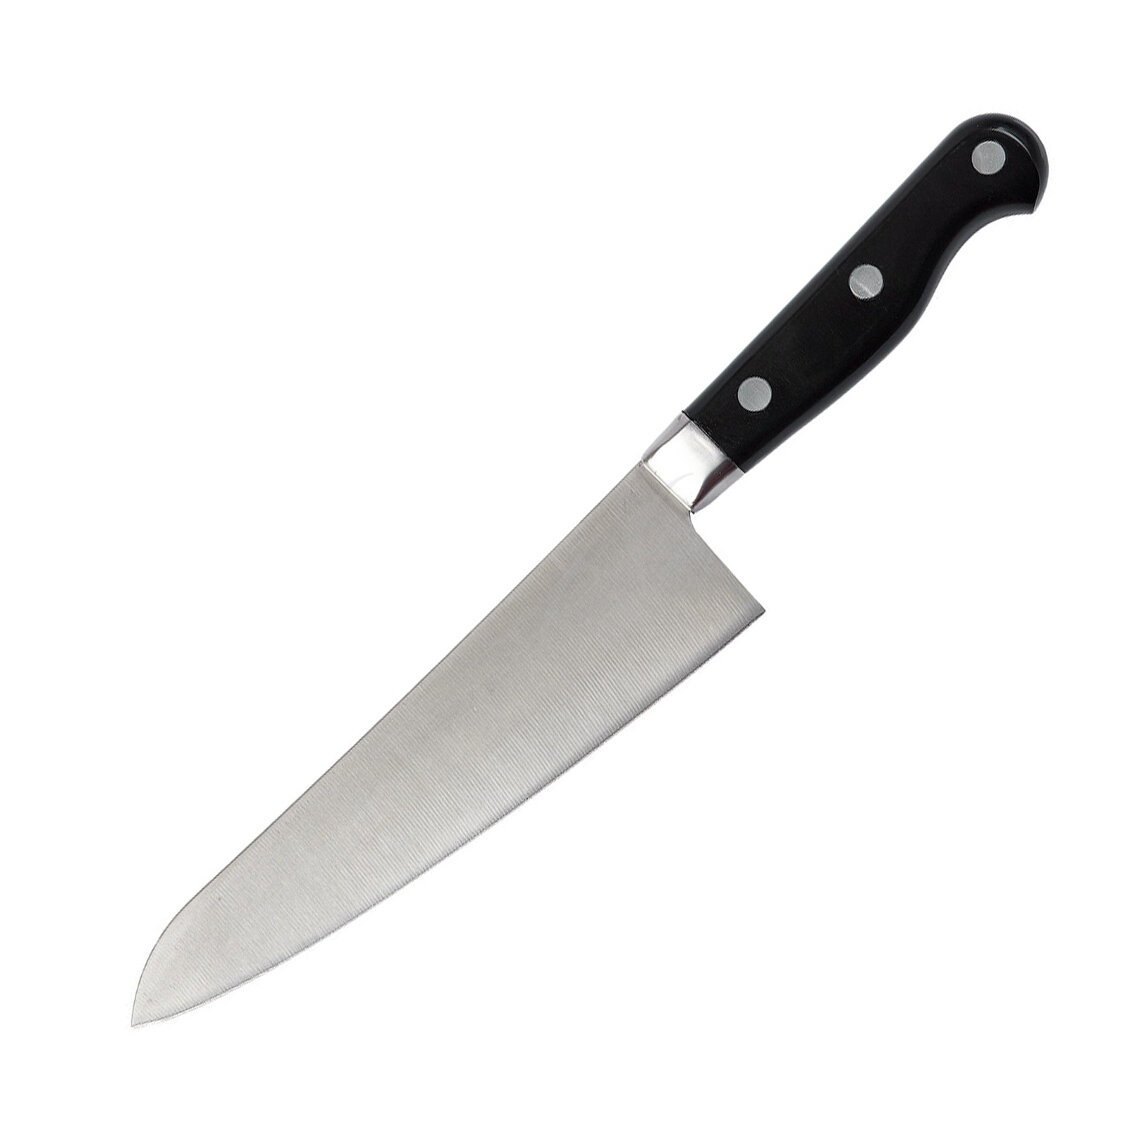 Нож универсальной формы, подходящий для нарезки разных продуктов